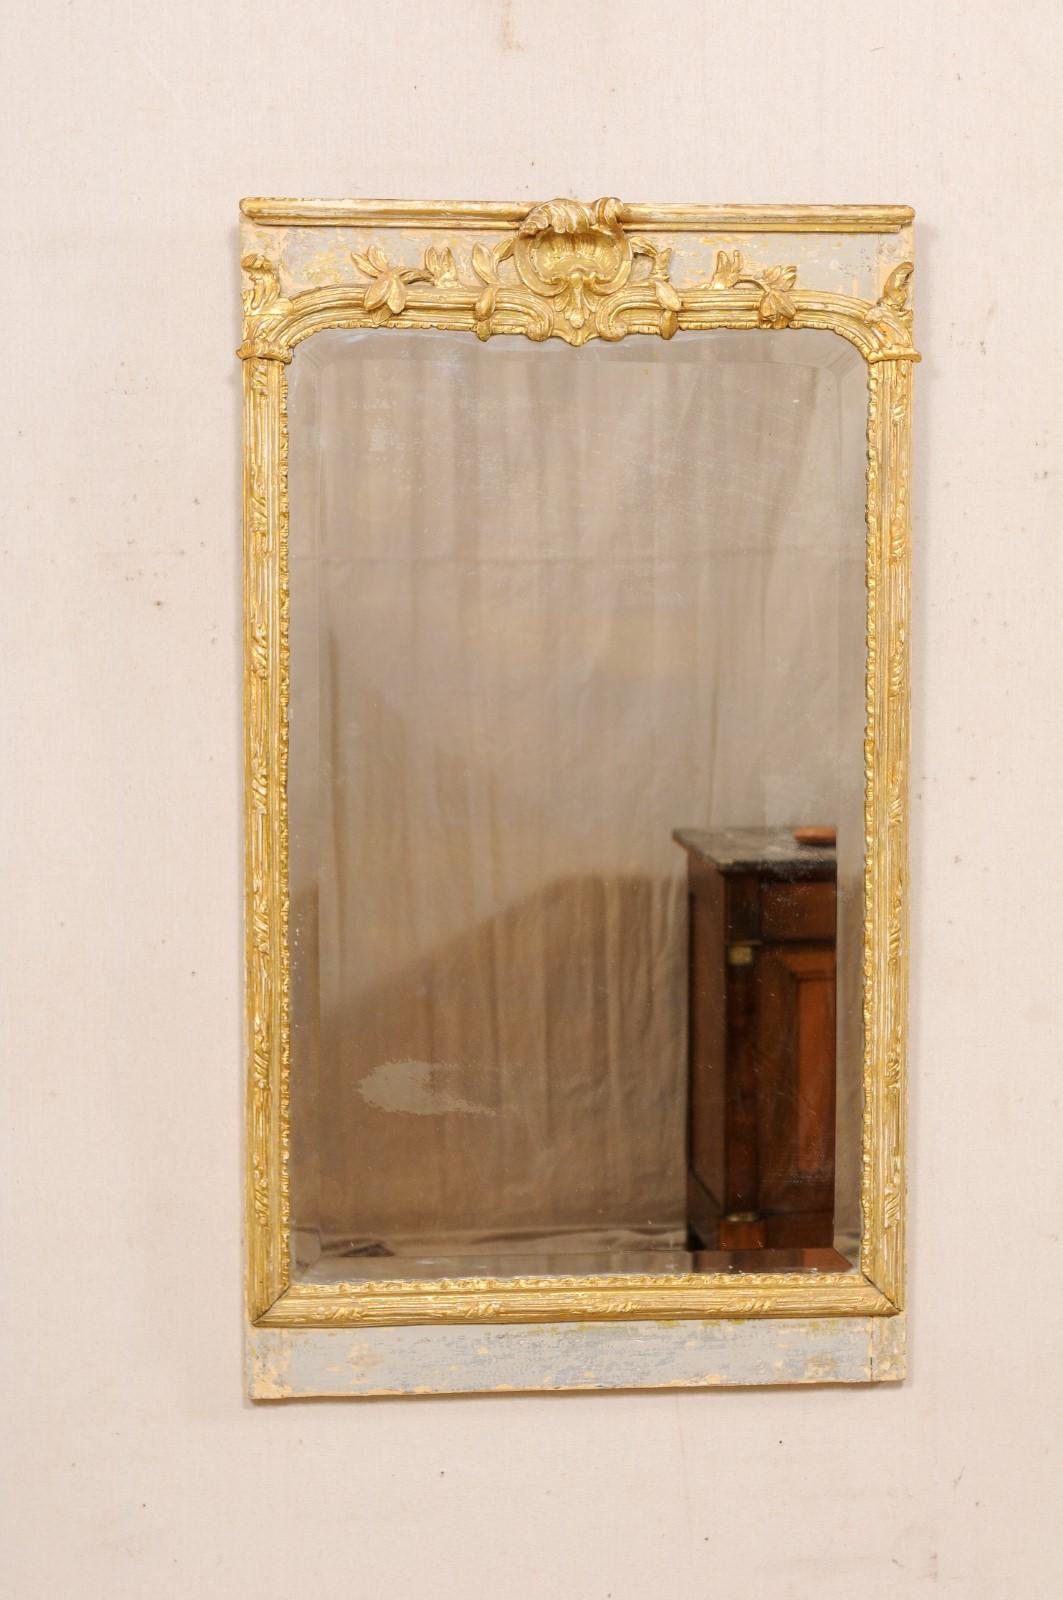 Miroir rectangulaire français, avec encadrement en bois sculpté et peint, du 19e siècle. Ce miroir ancien de France a un centre en verre miroir de forme rectangulaire, avec un cadre en bois joliment sculpté présentant une feuille d'acanthe enroulée